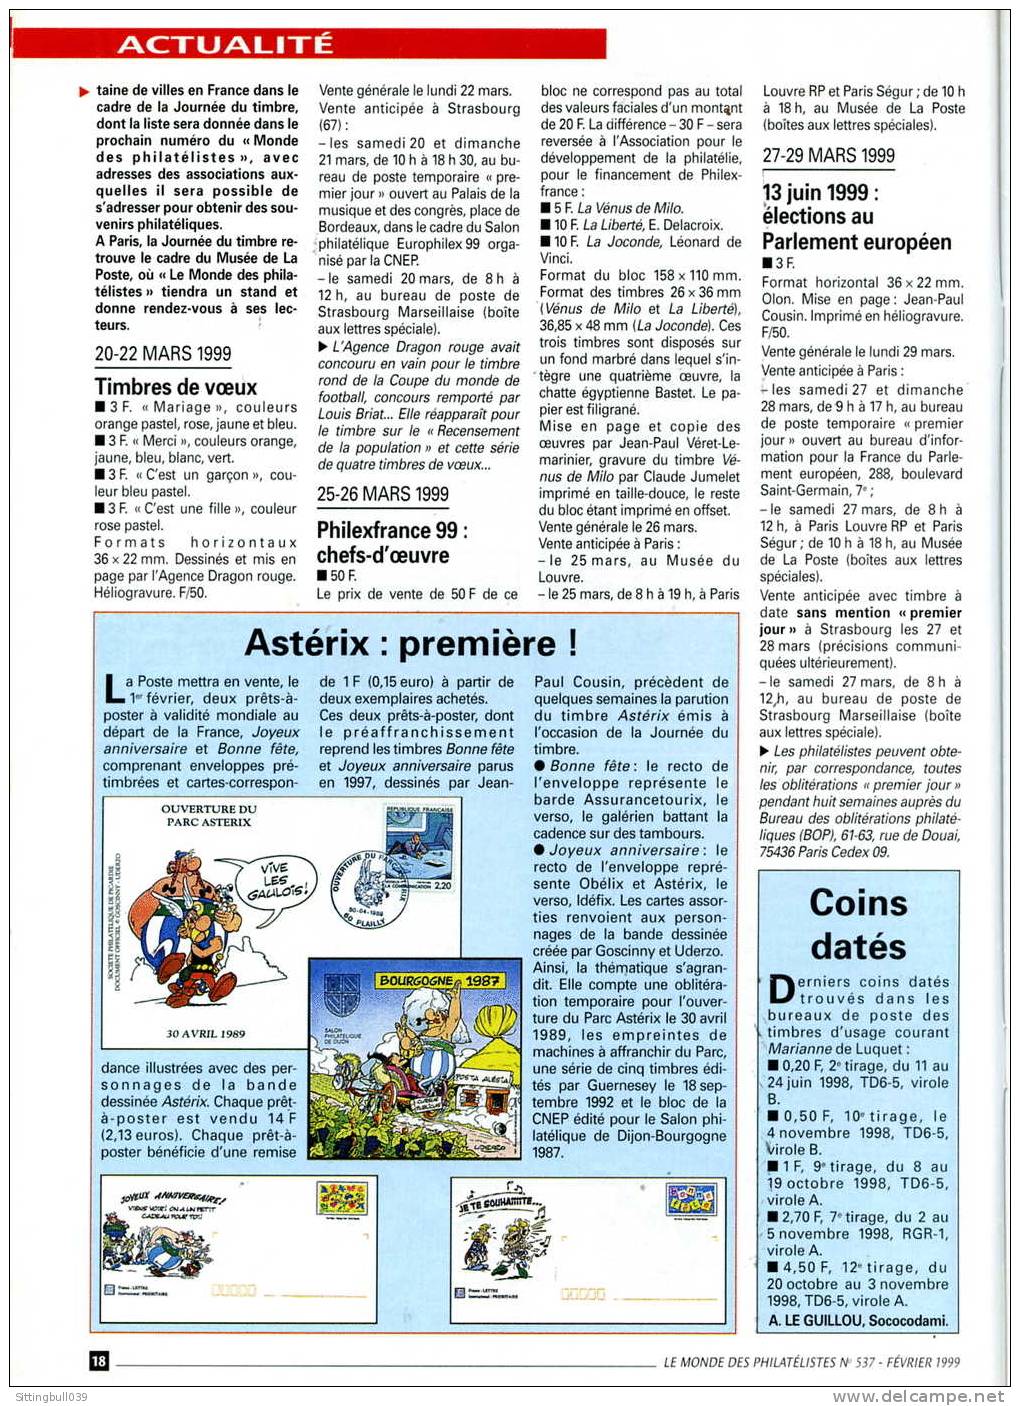 ASTERIX. JOURNEE DU TIMBRE ASTERIX PAR TOUTATIS ! DANS LE MONDE DES PHILATELISTES N° 537. FEV. 1999 - Asterix